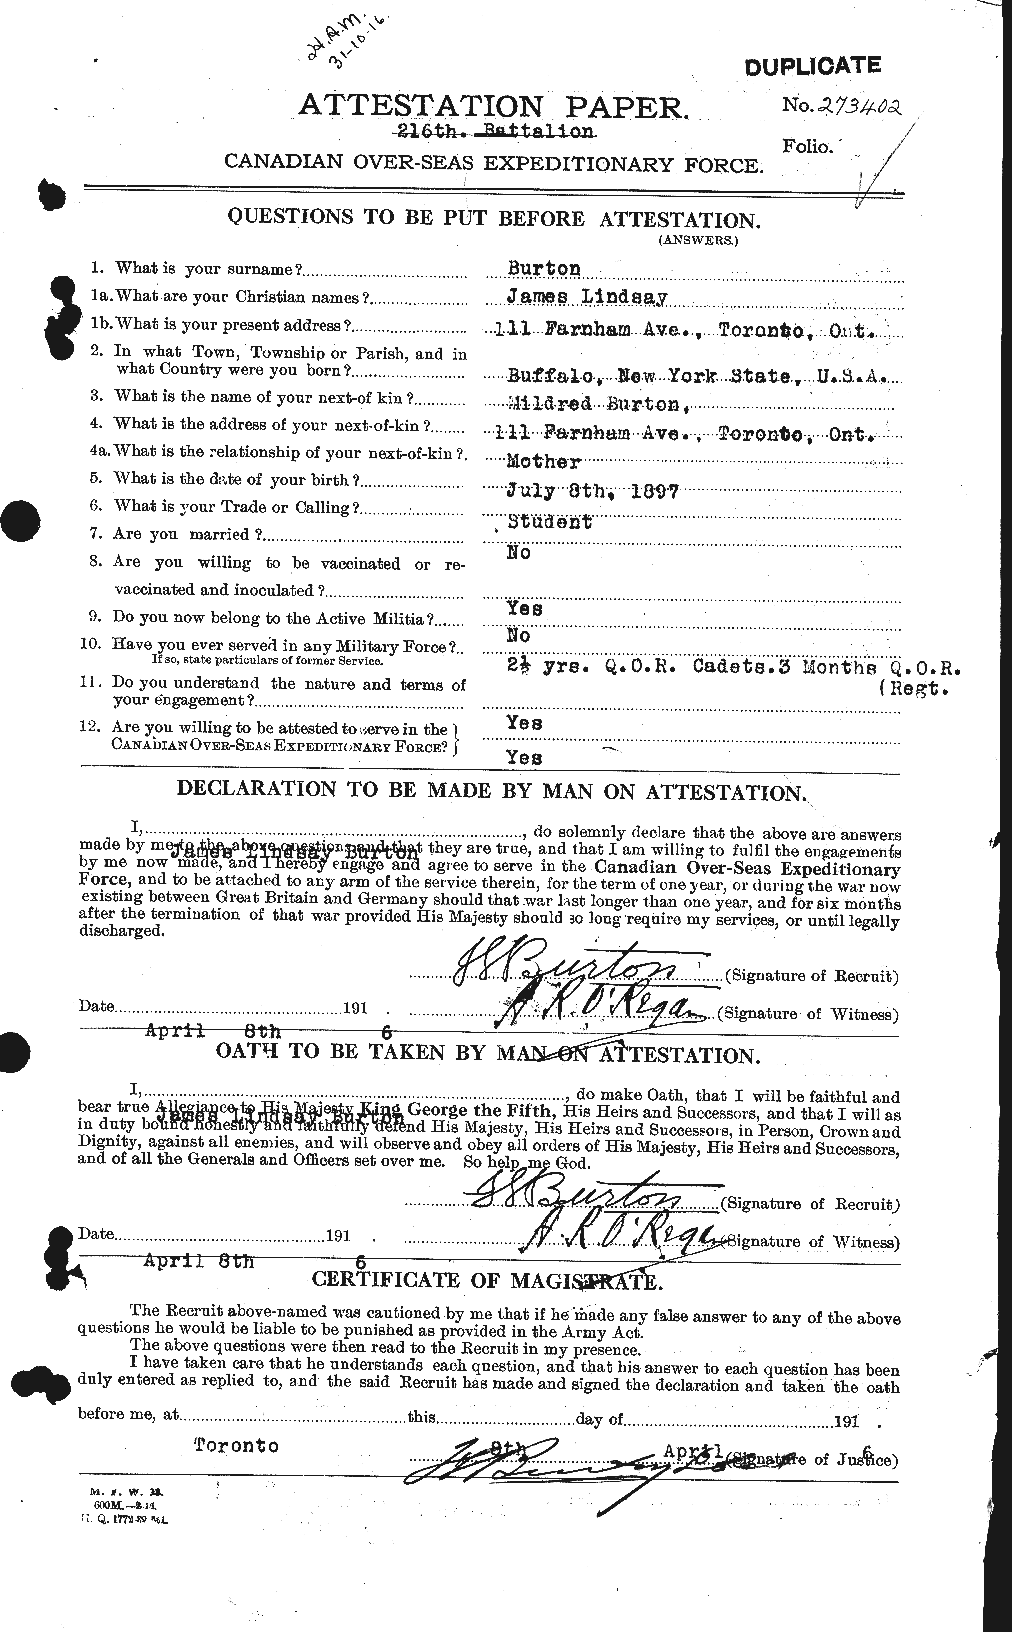 Dossiers du Personnel de la Première Guerre mondiale - CEC 272634a